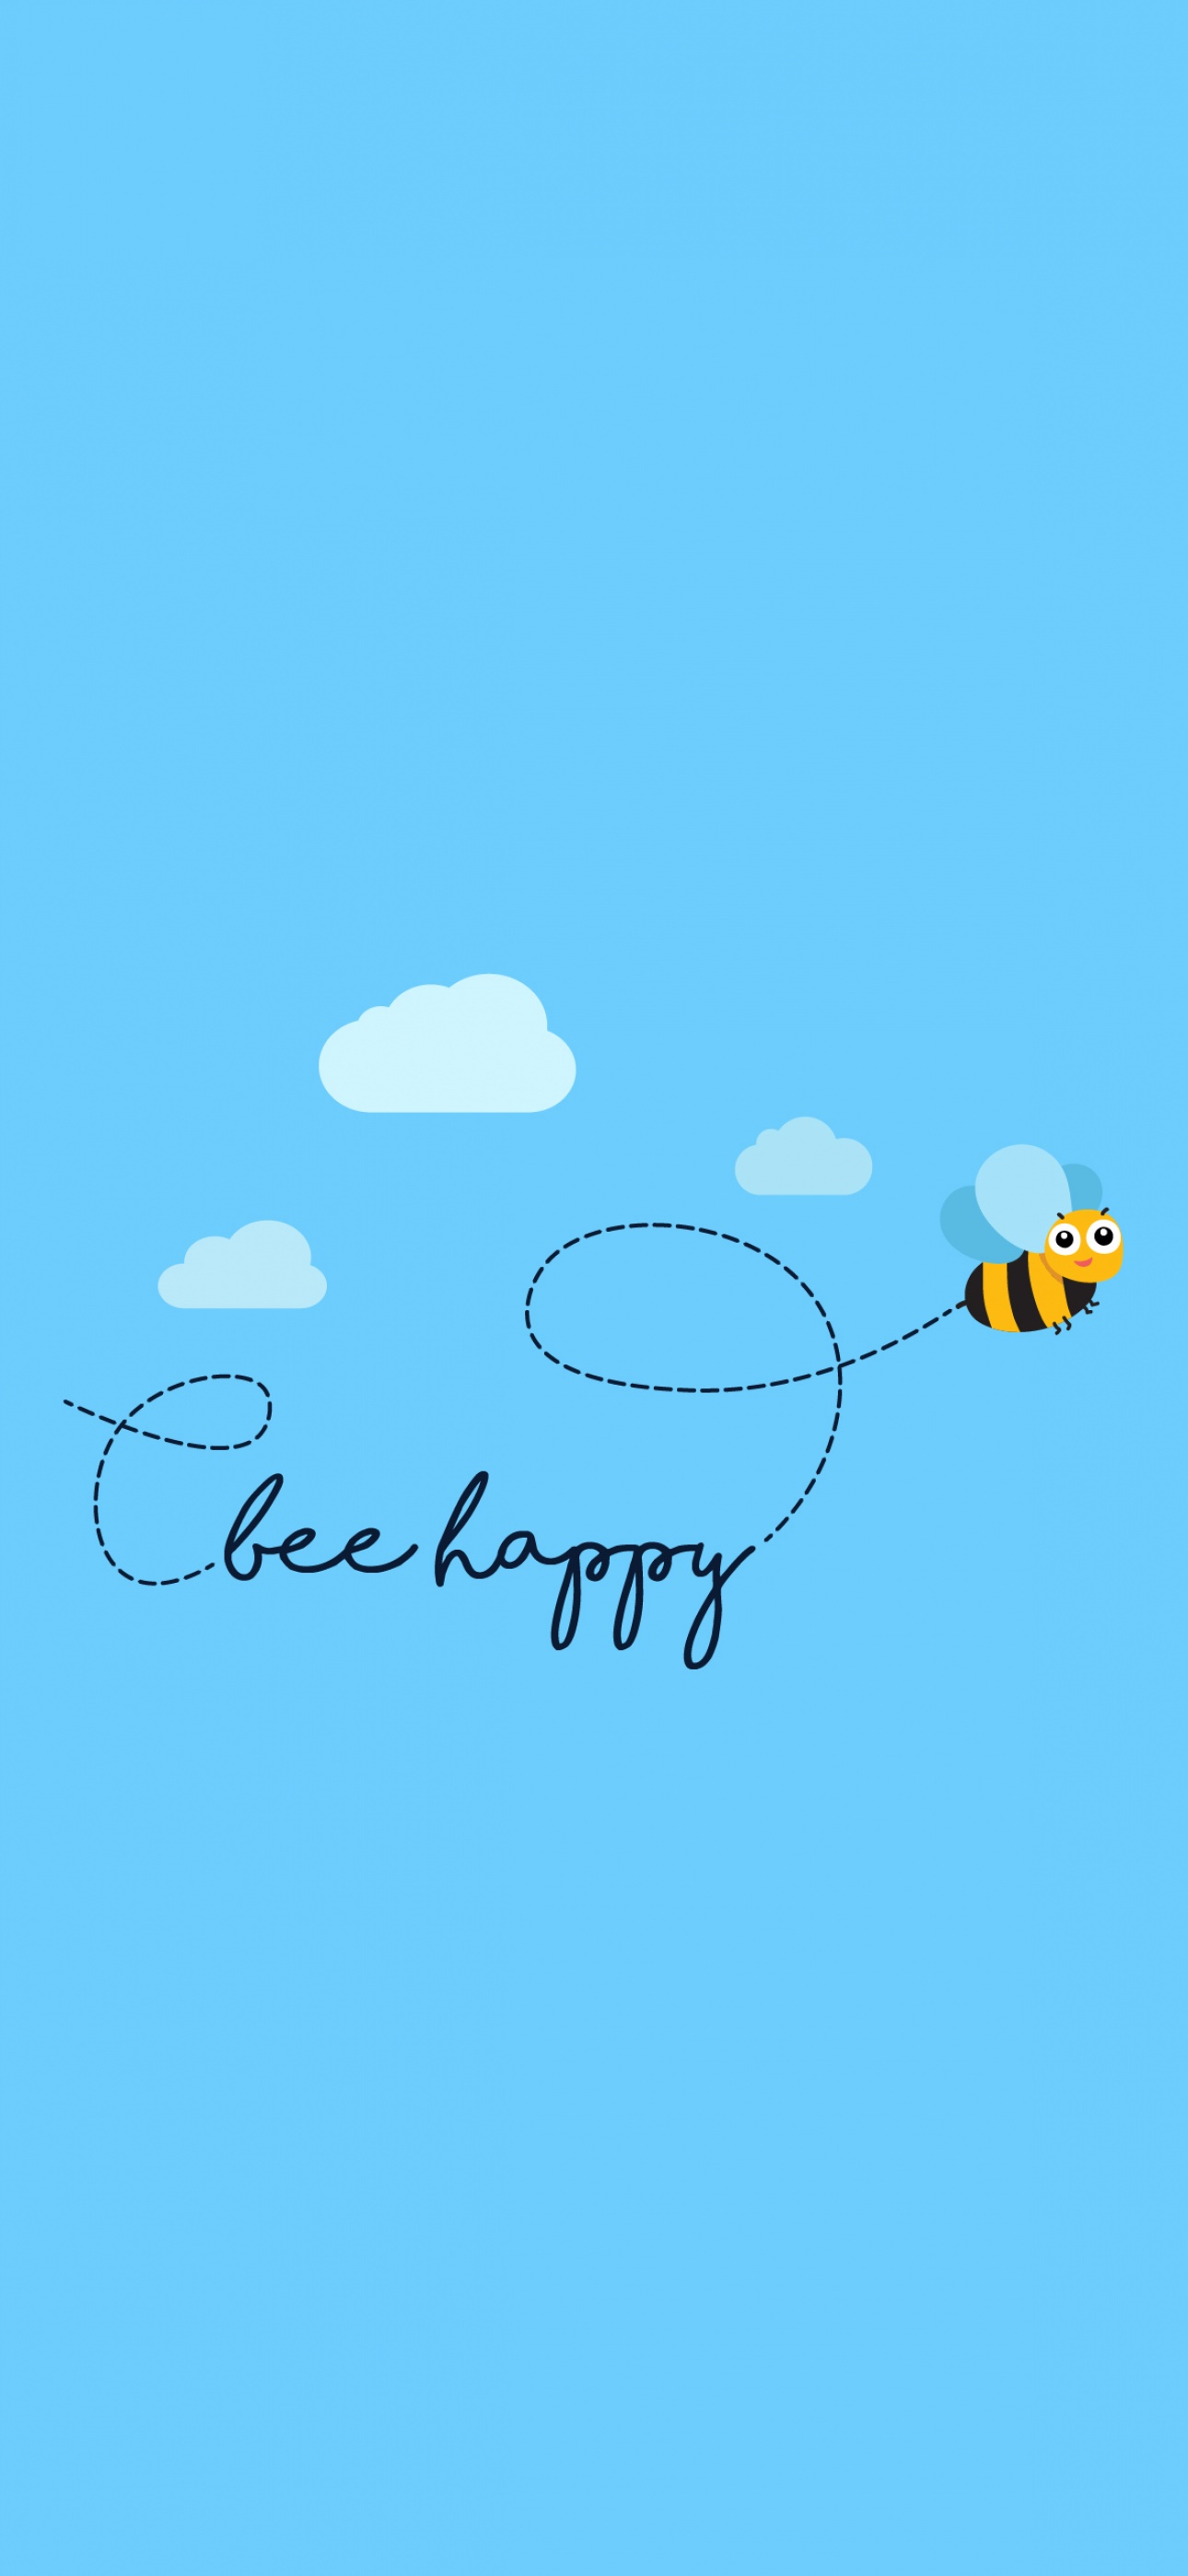 Bee happy Wallpaper 4K, Clear sky, Sky blue, Minimal, #1407